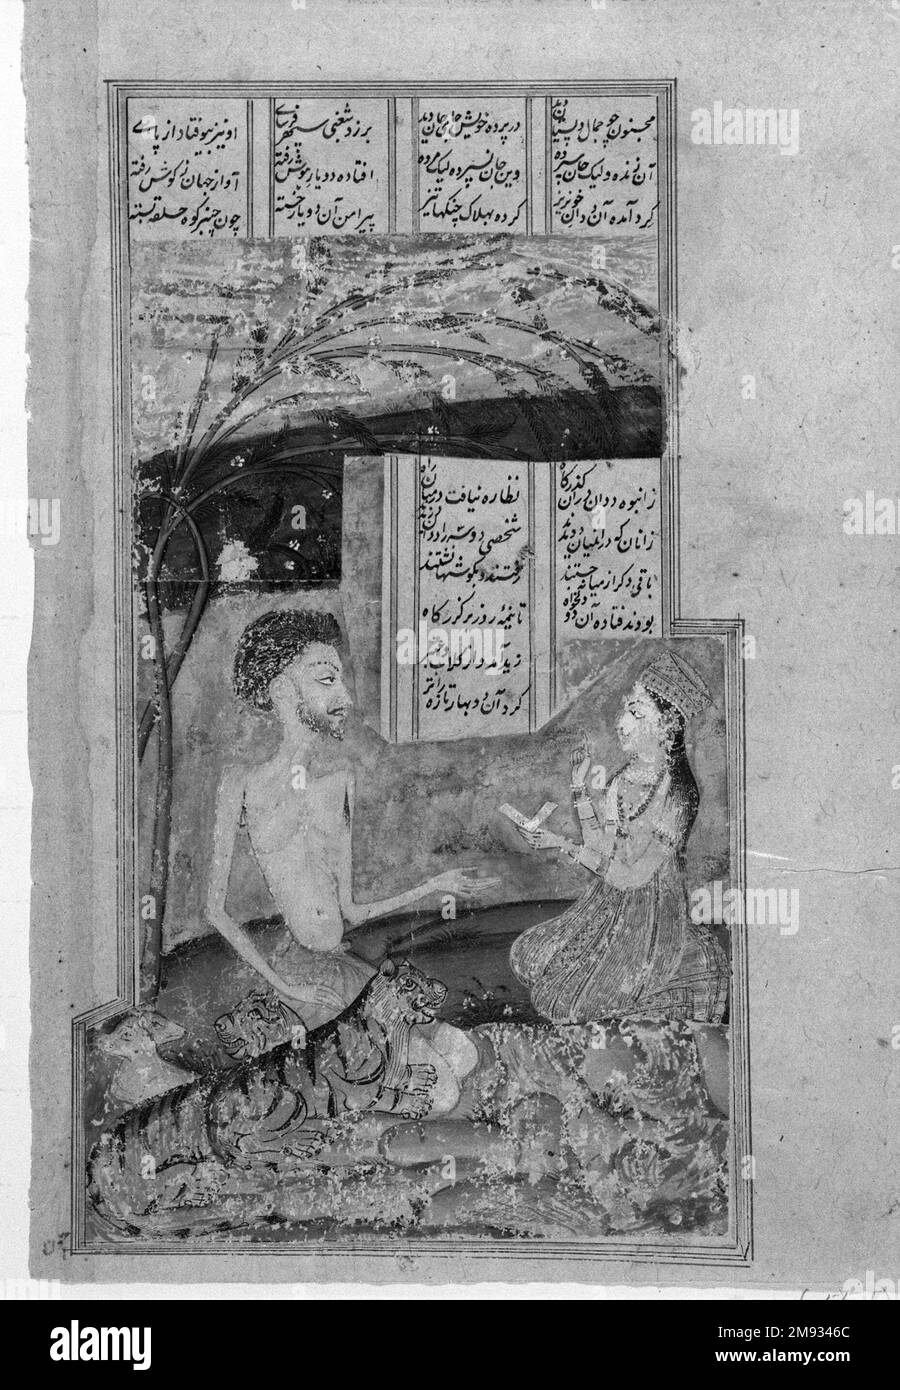 Layli besucht Majnun in The Grove Indian. Layli besucht Majnun in the Grove, 17. Jahrhundert. Tinte und lichtundurchlässige Aquarelle auf Papier, Blatt: 9 3/8 x 6 Zoll (23,8 x 15,2 cm). Eines der besten Vorbilder für mystische Liebe in der islamischen Welt ist der tragische Held Majnun, dessen Liebe zu Layli ihn letztendlich in den Wahnsinn und ins Exil trieb. Obwohl die Wurzeln der Geschichte in einer arabischen Geschichte liegen, ist sie Gegenstand eines der fünf erzählenden Gedichte des Khamsa (Quintet), des persischen Dichters Nizami von Ganja (1141-1209) und aus dem Iran, das sie nach Indien verbreitete. Illustrationen von Majnun in der Wildnis sind in östlichen Islami weit verbreitet Stockfoto